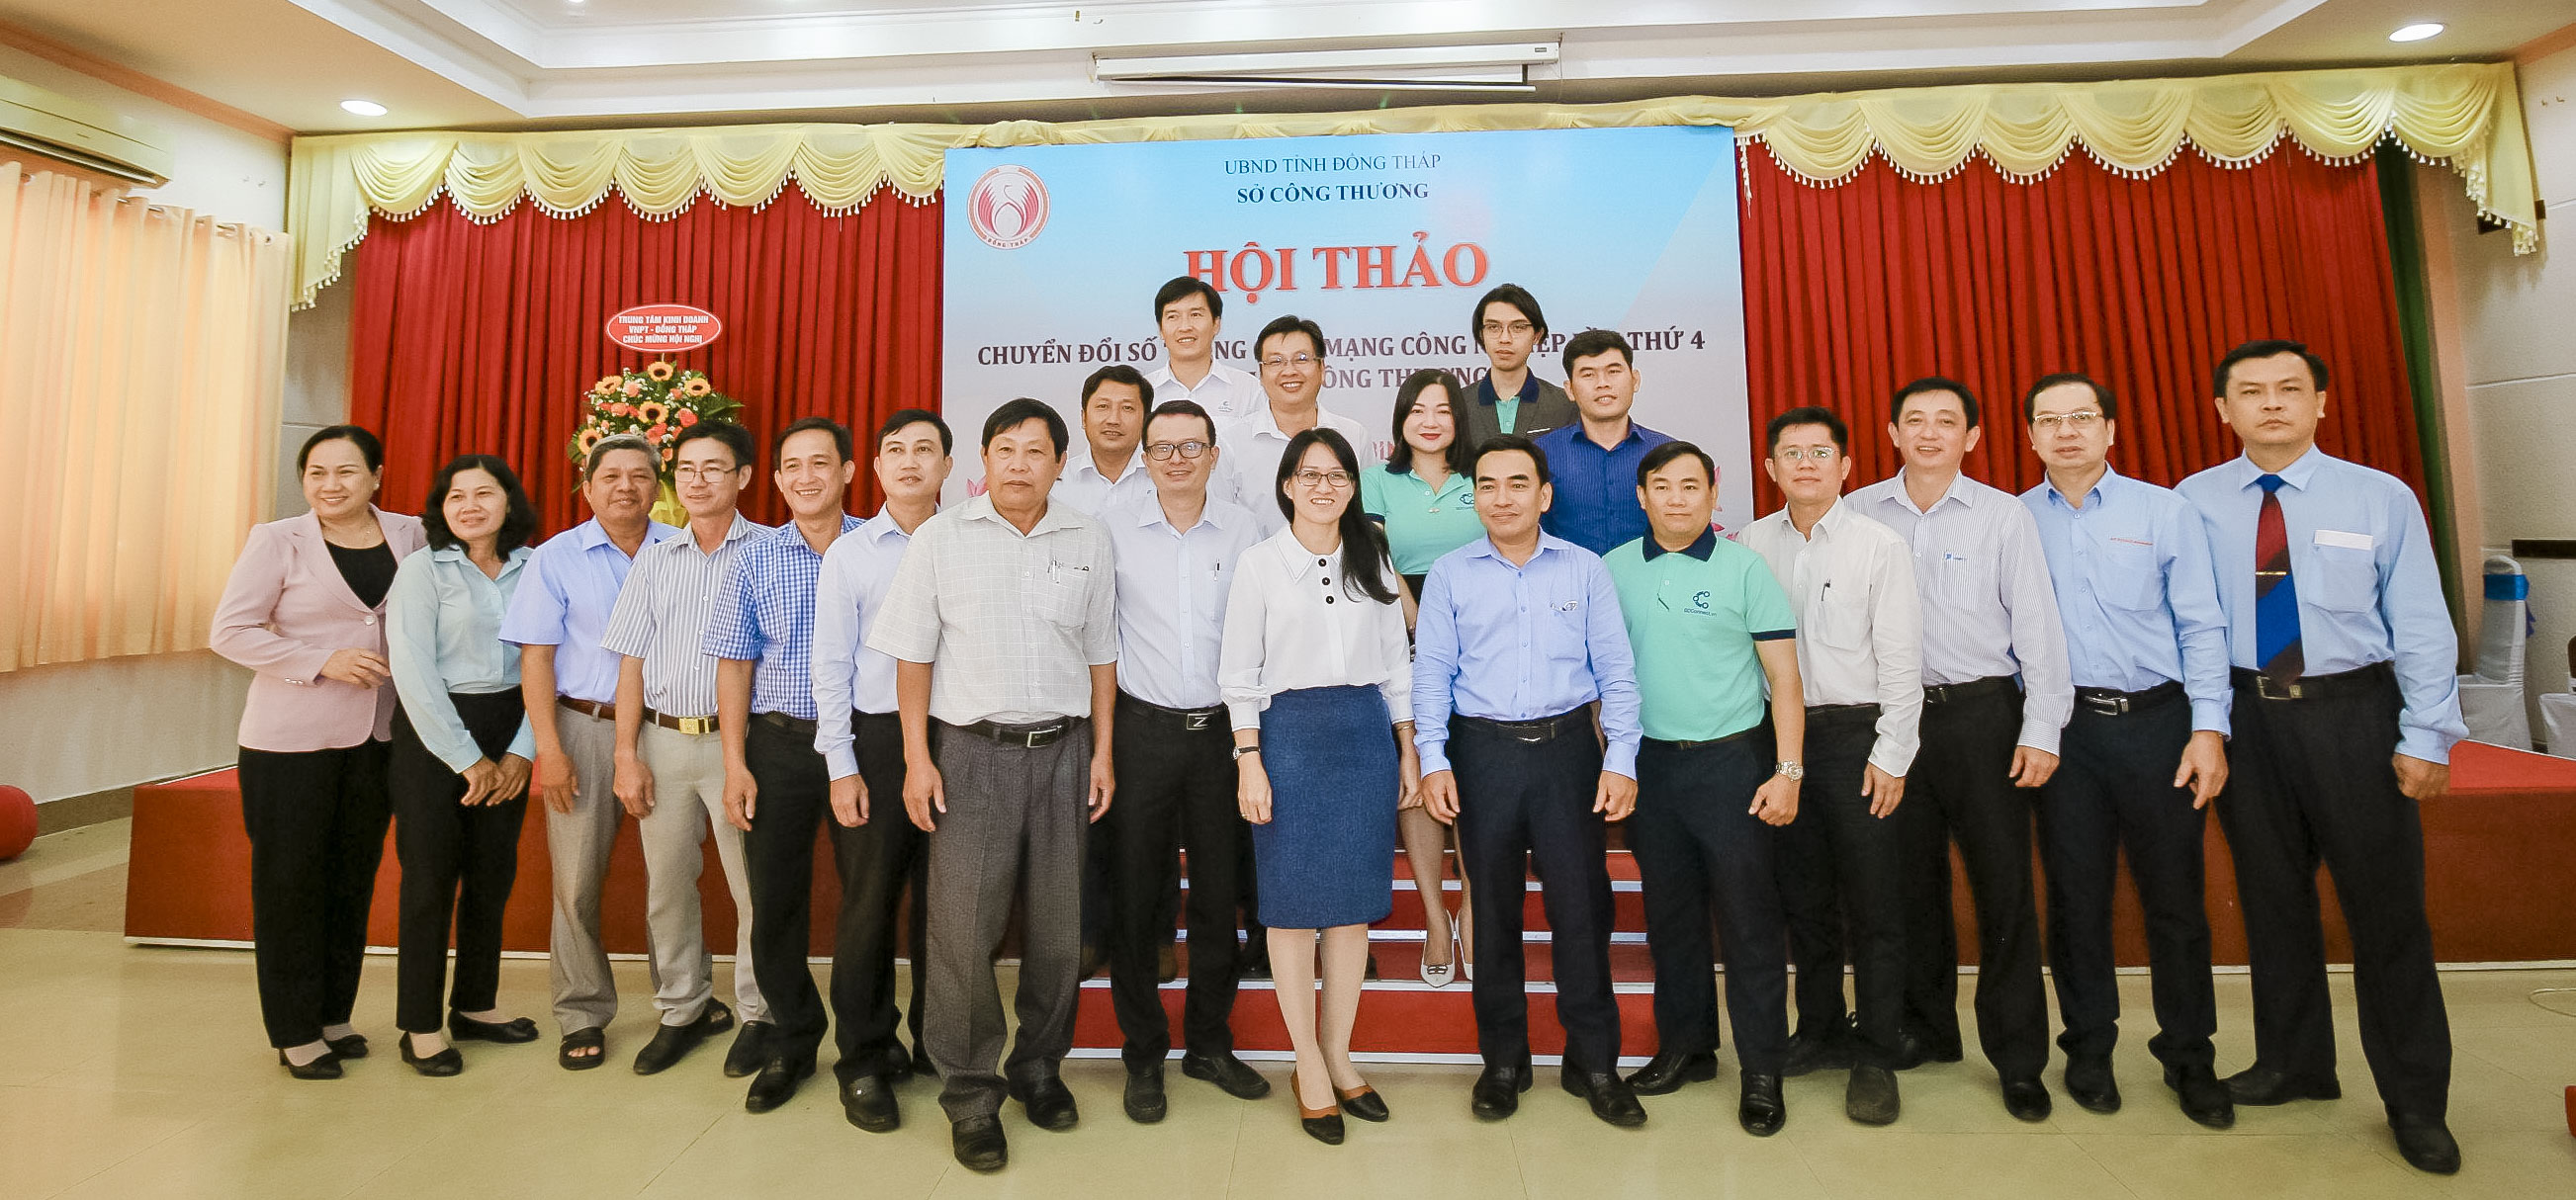 SDConnect.vn (VietPhatGroup) tham dự Hội thảo chuyển đổi số trong cách mạng công nghiệp lần thứ 4 lĩnh vực Công Thương tỉnh Đồng Tháp